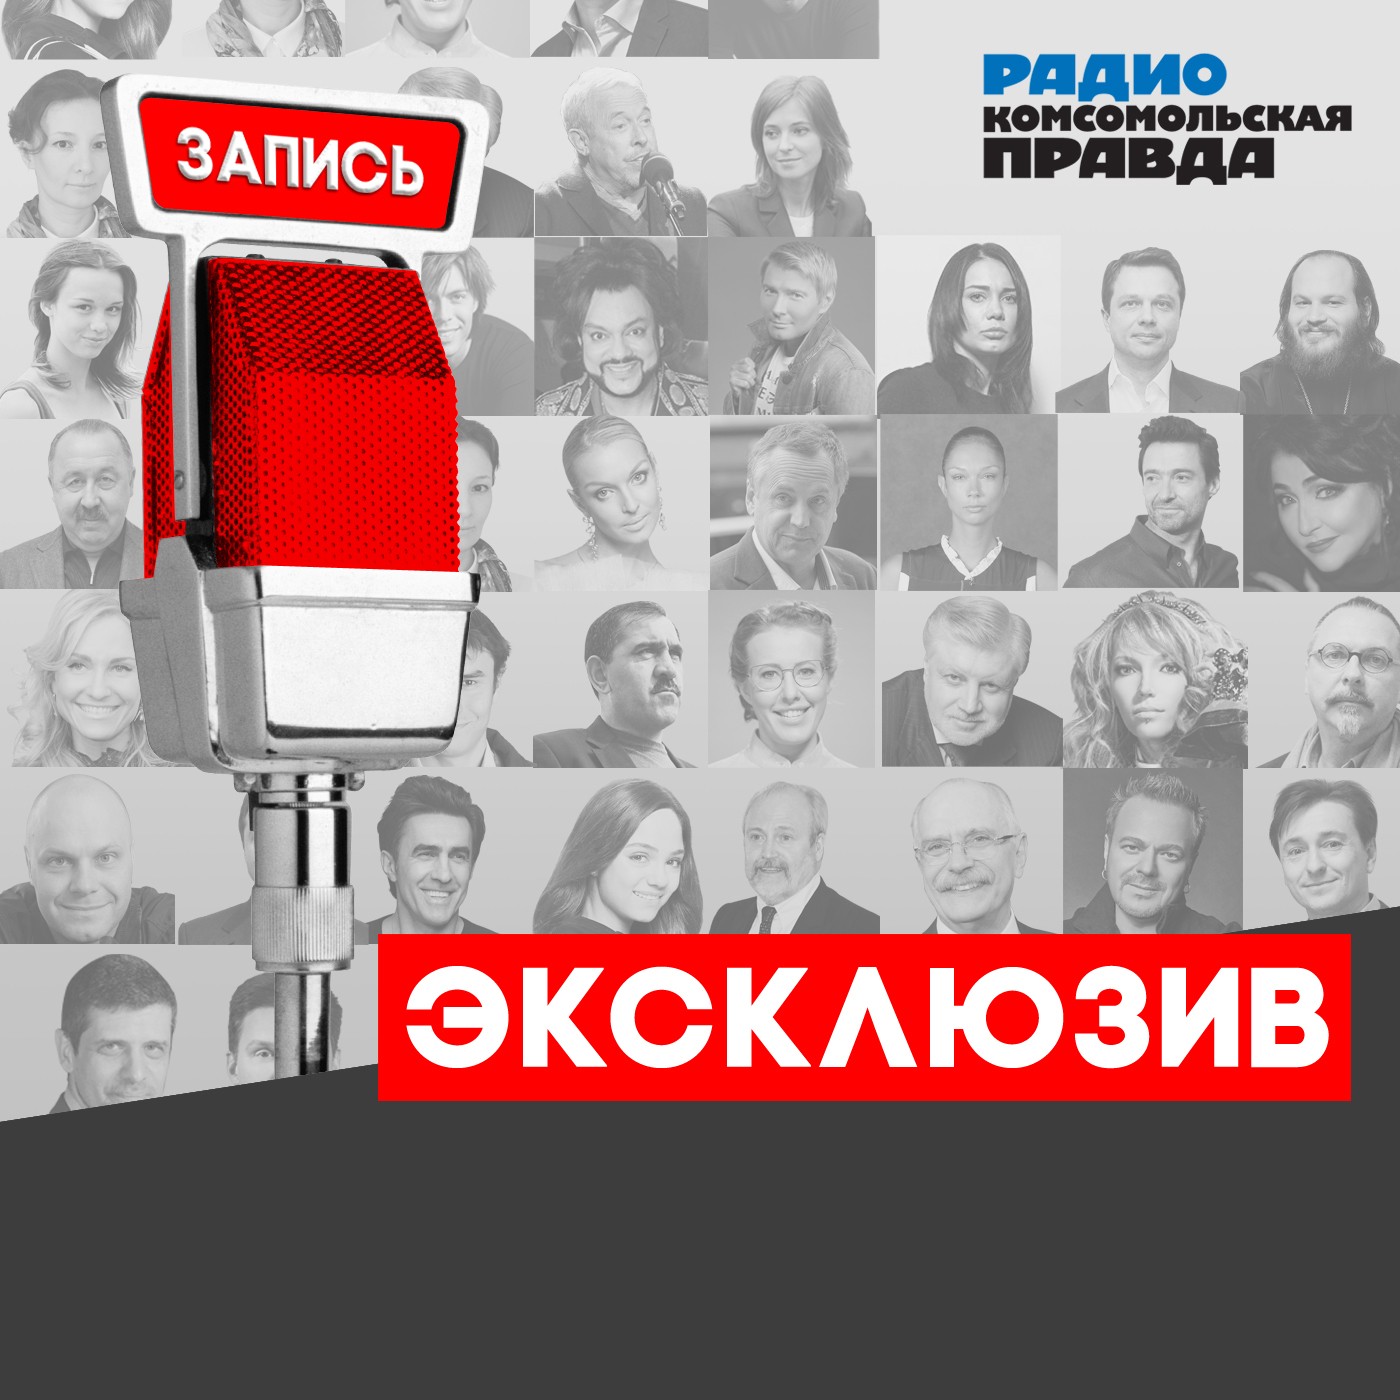 Радио «Комсомольская правда» Сергей Безруков: «Я из крестьянской семьи — привык работать, пахать»